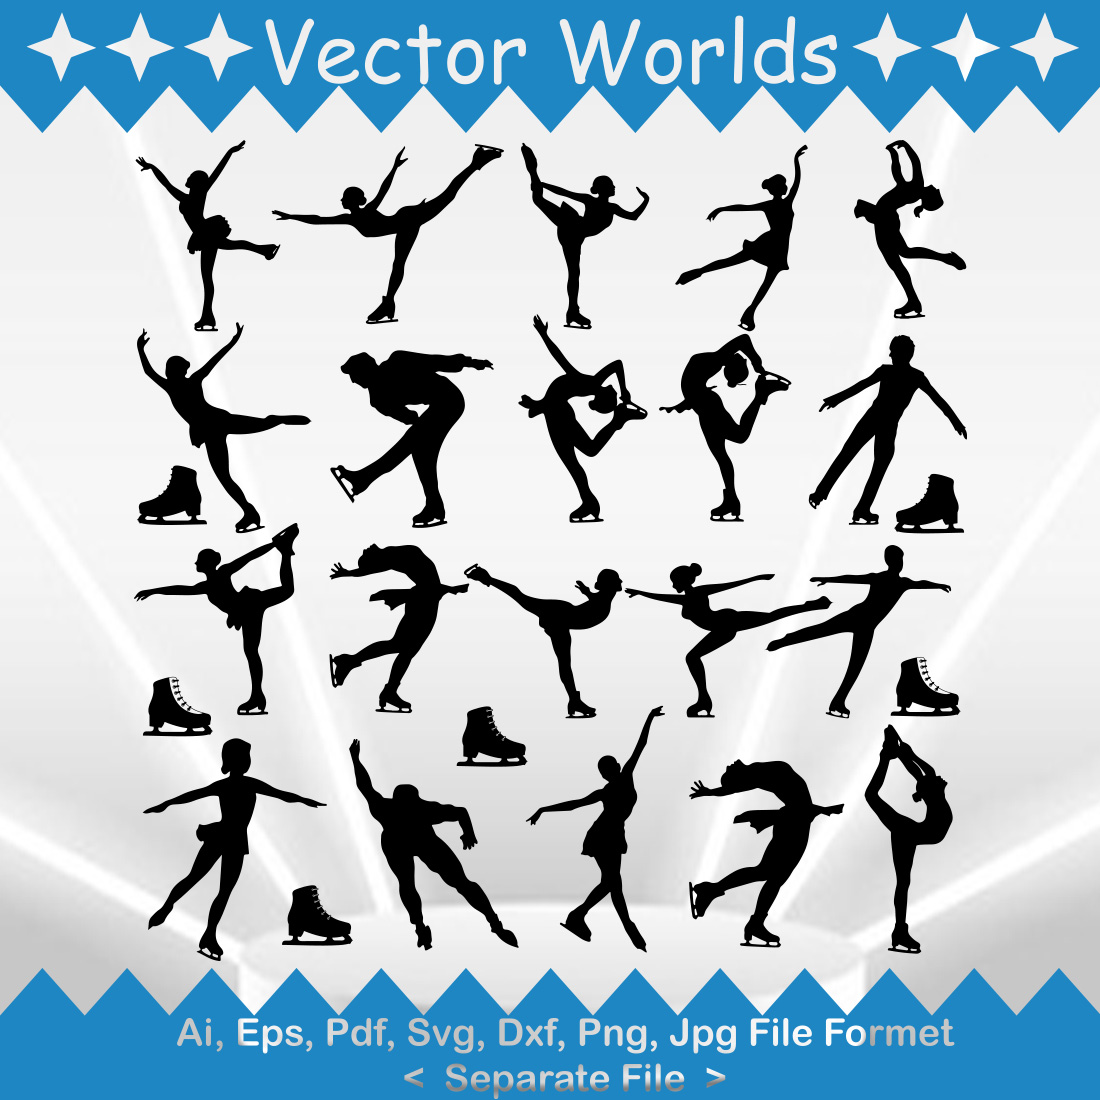 Figure Skating SVG Vector Design main image.